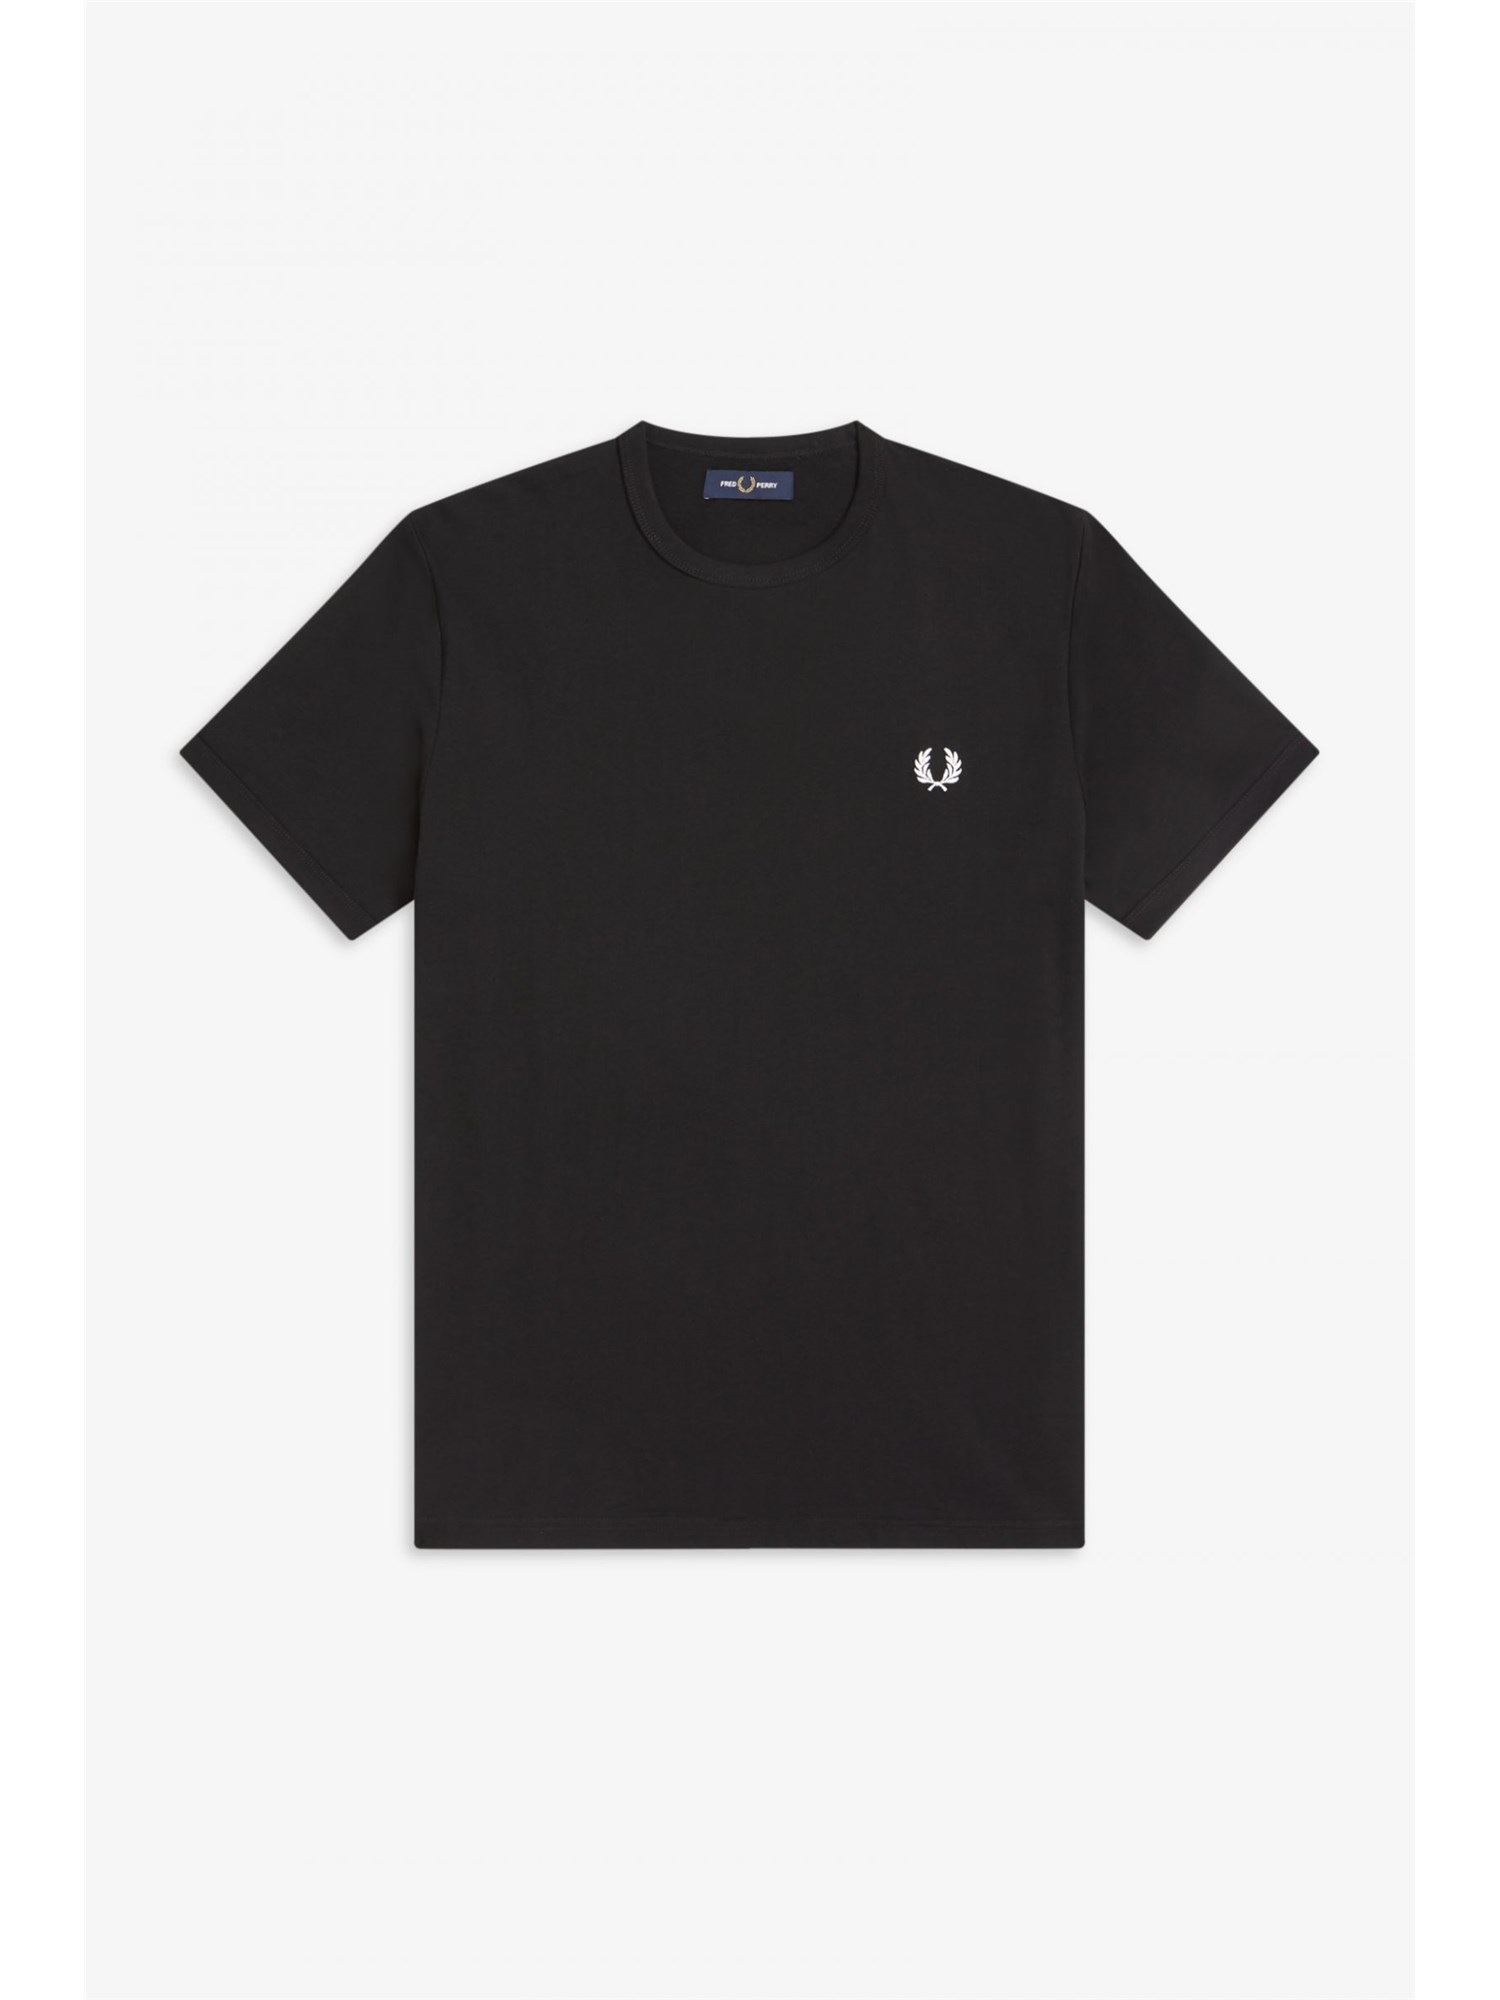 Fred Perry M3519 102 BLACK Nero Abbigliamento Uomo T-shirt Uomo